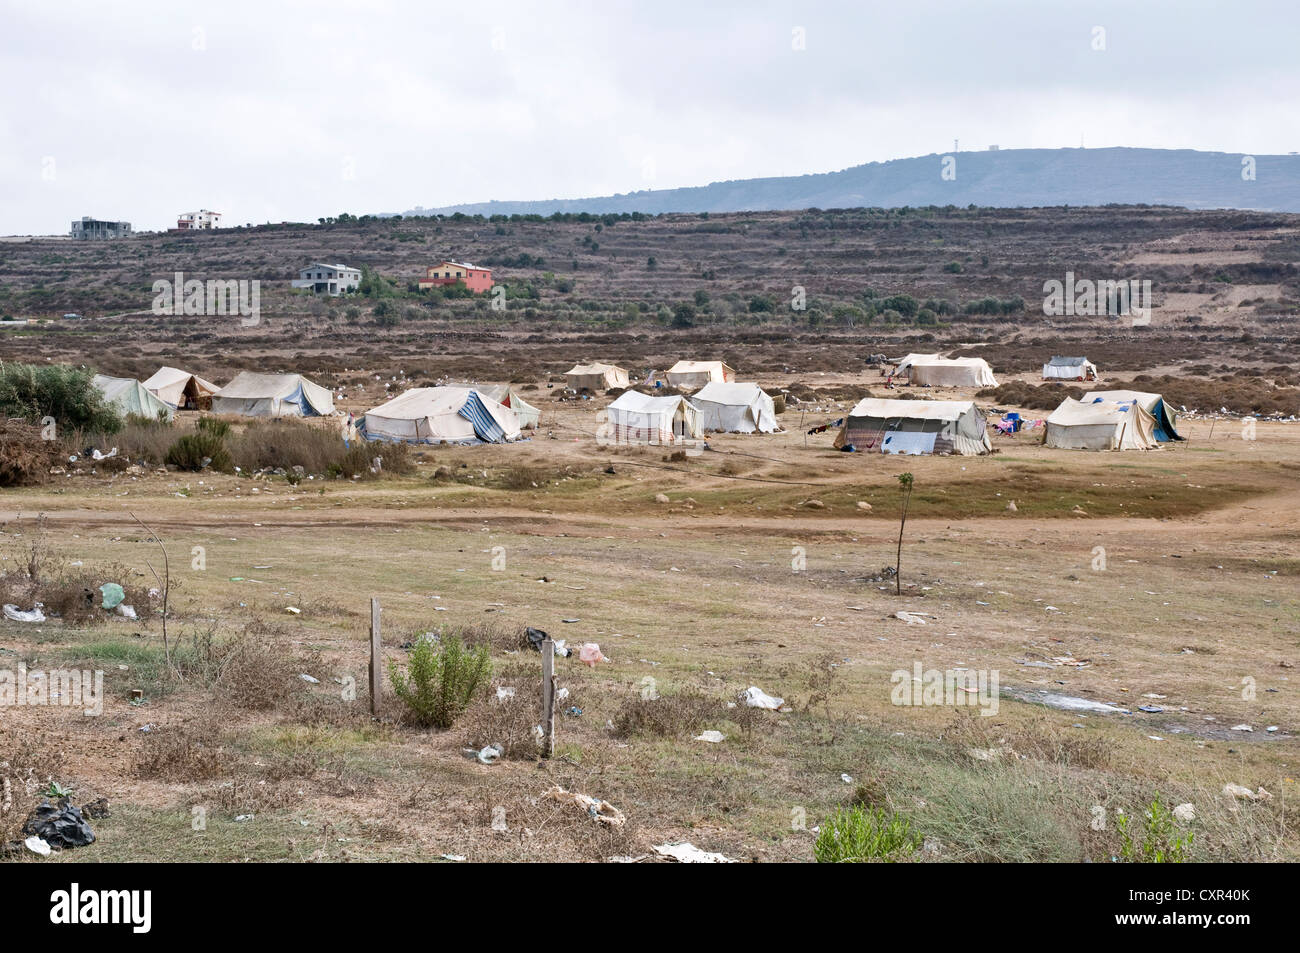 Un camp de réfugiés sous tente pour les migrants syriens dans la région de Wadi Khaled, au nord du Liban, juste au sud de la frontière entre la Syrie et le Liban. Banque D'Images